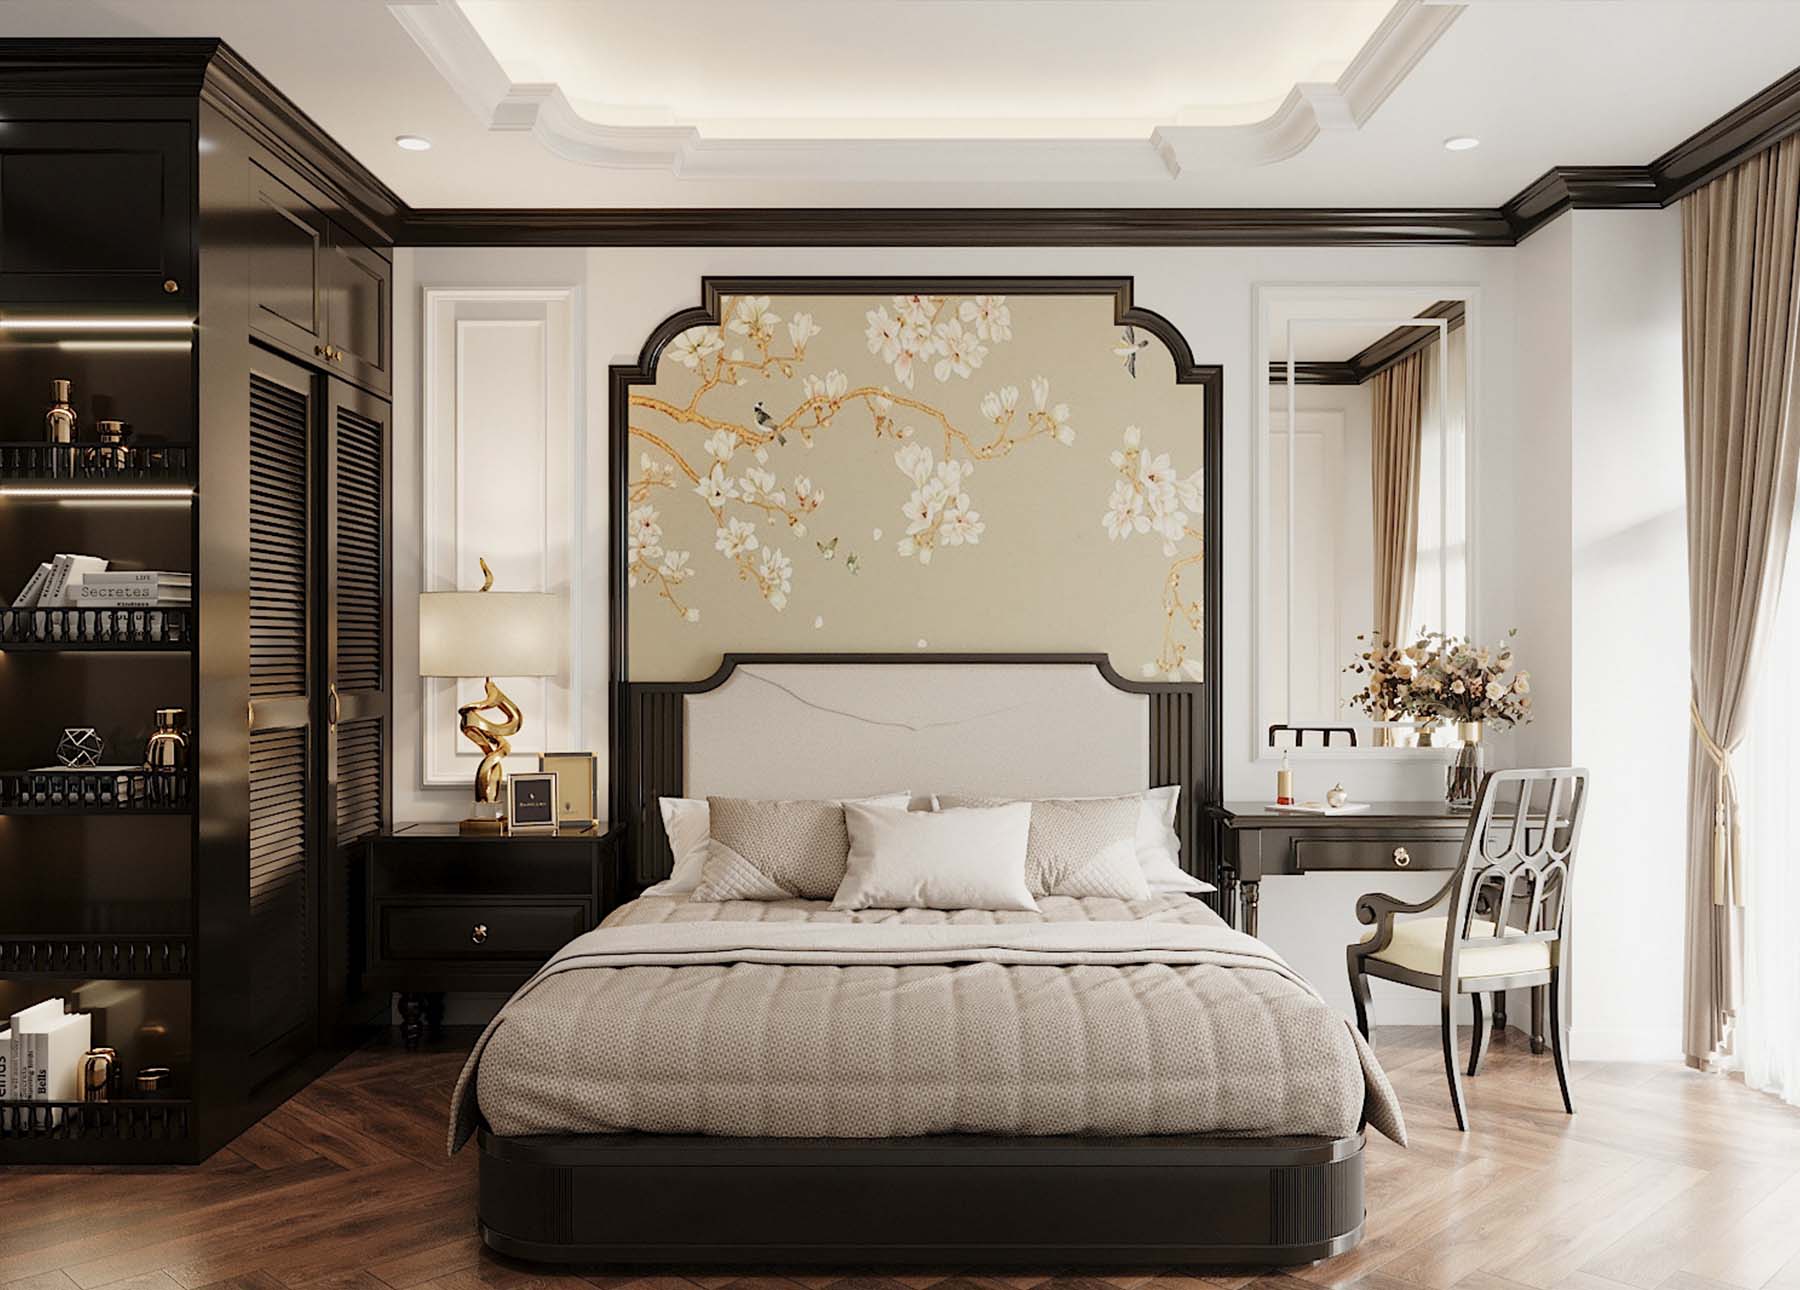 Giường ngủ phong cách Indochine gợi cảm giác yên bình, nhẹ nhàng